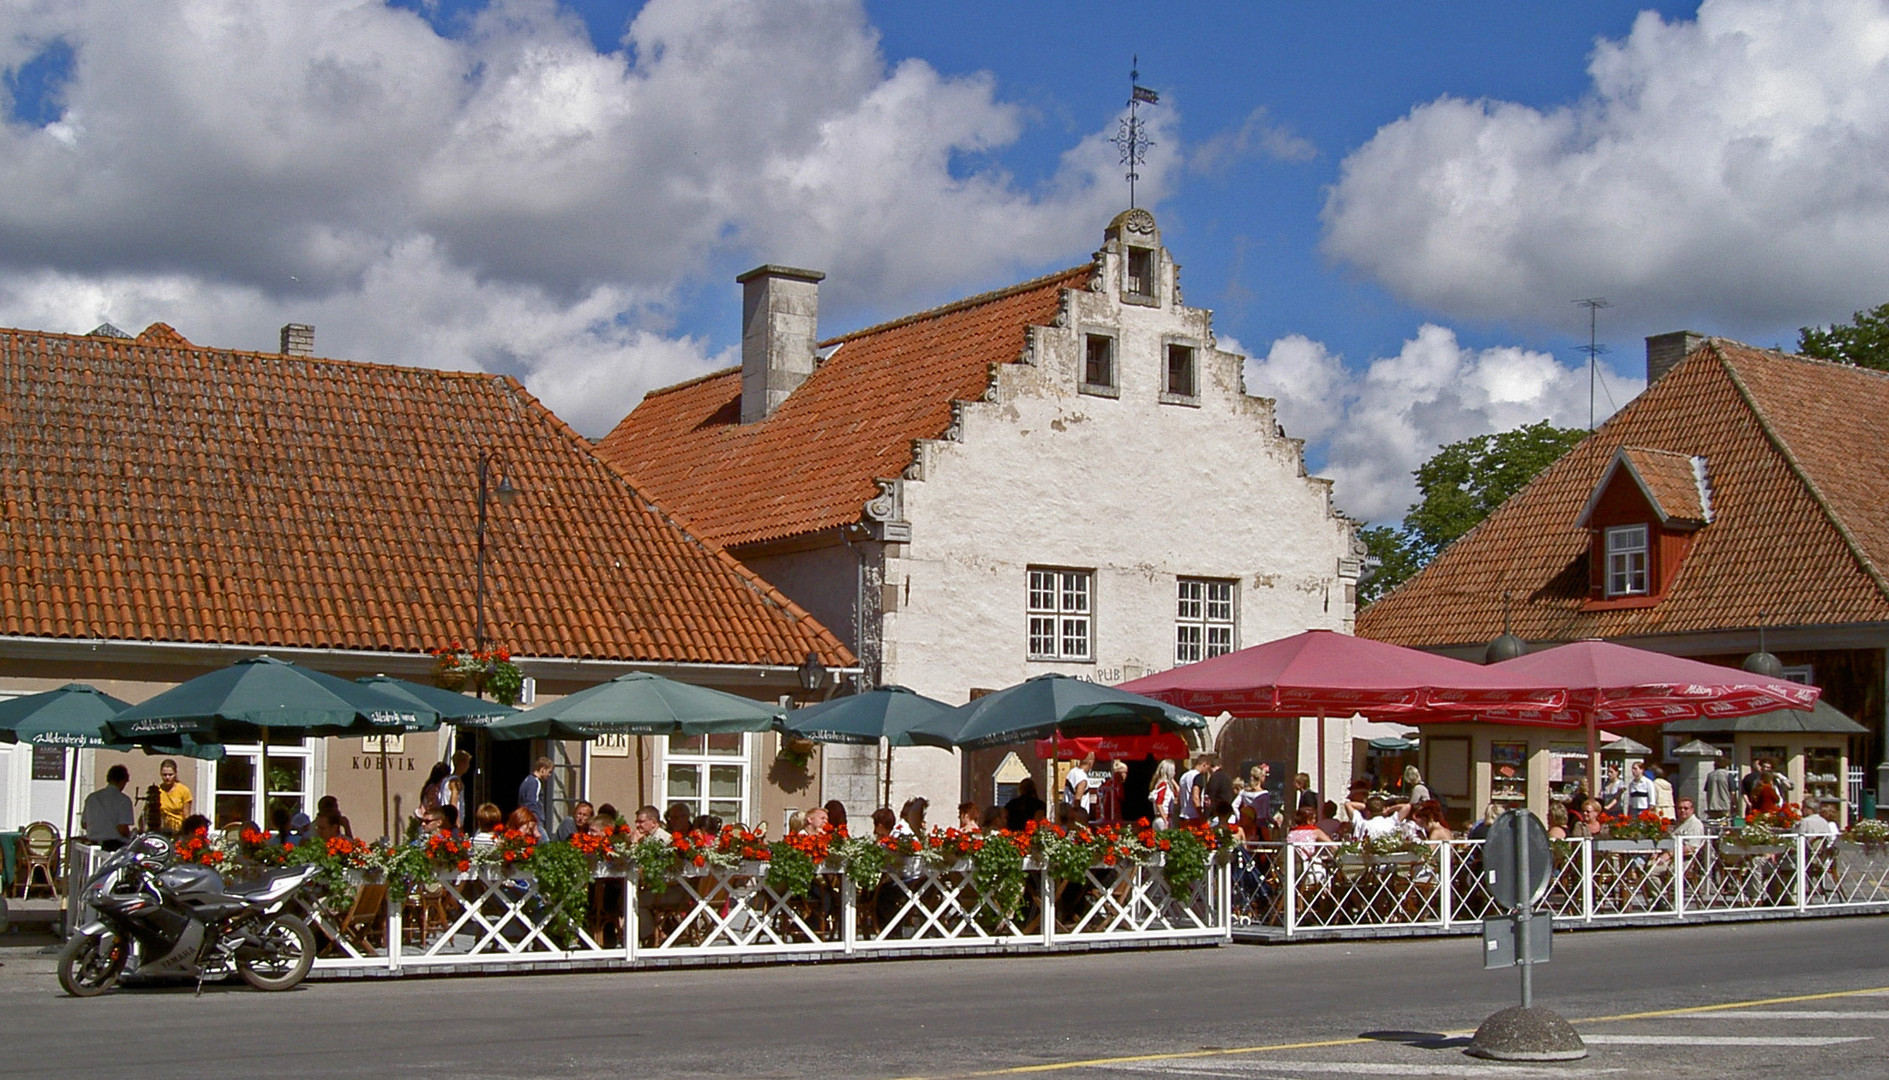 Eesti, Kuresaar, Vaekoja square